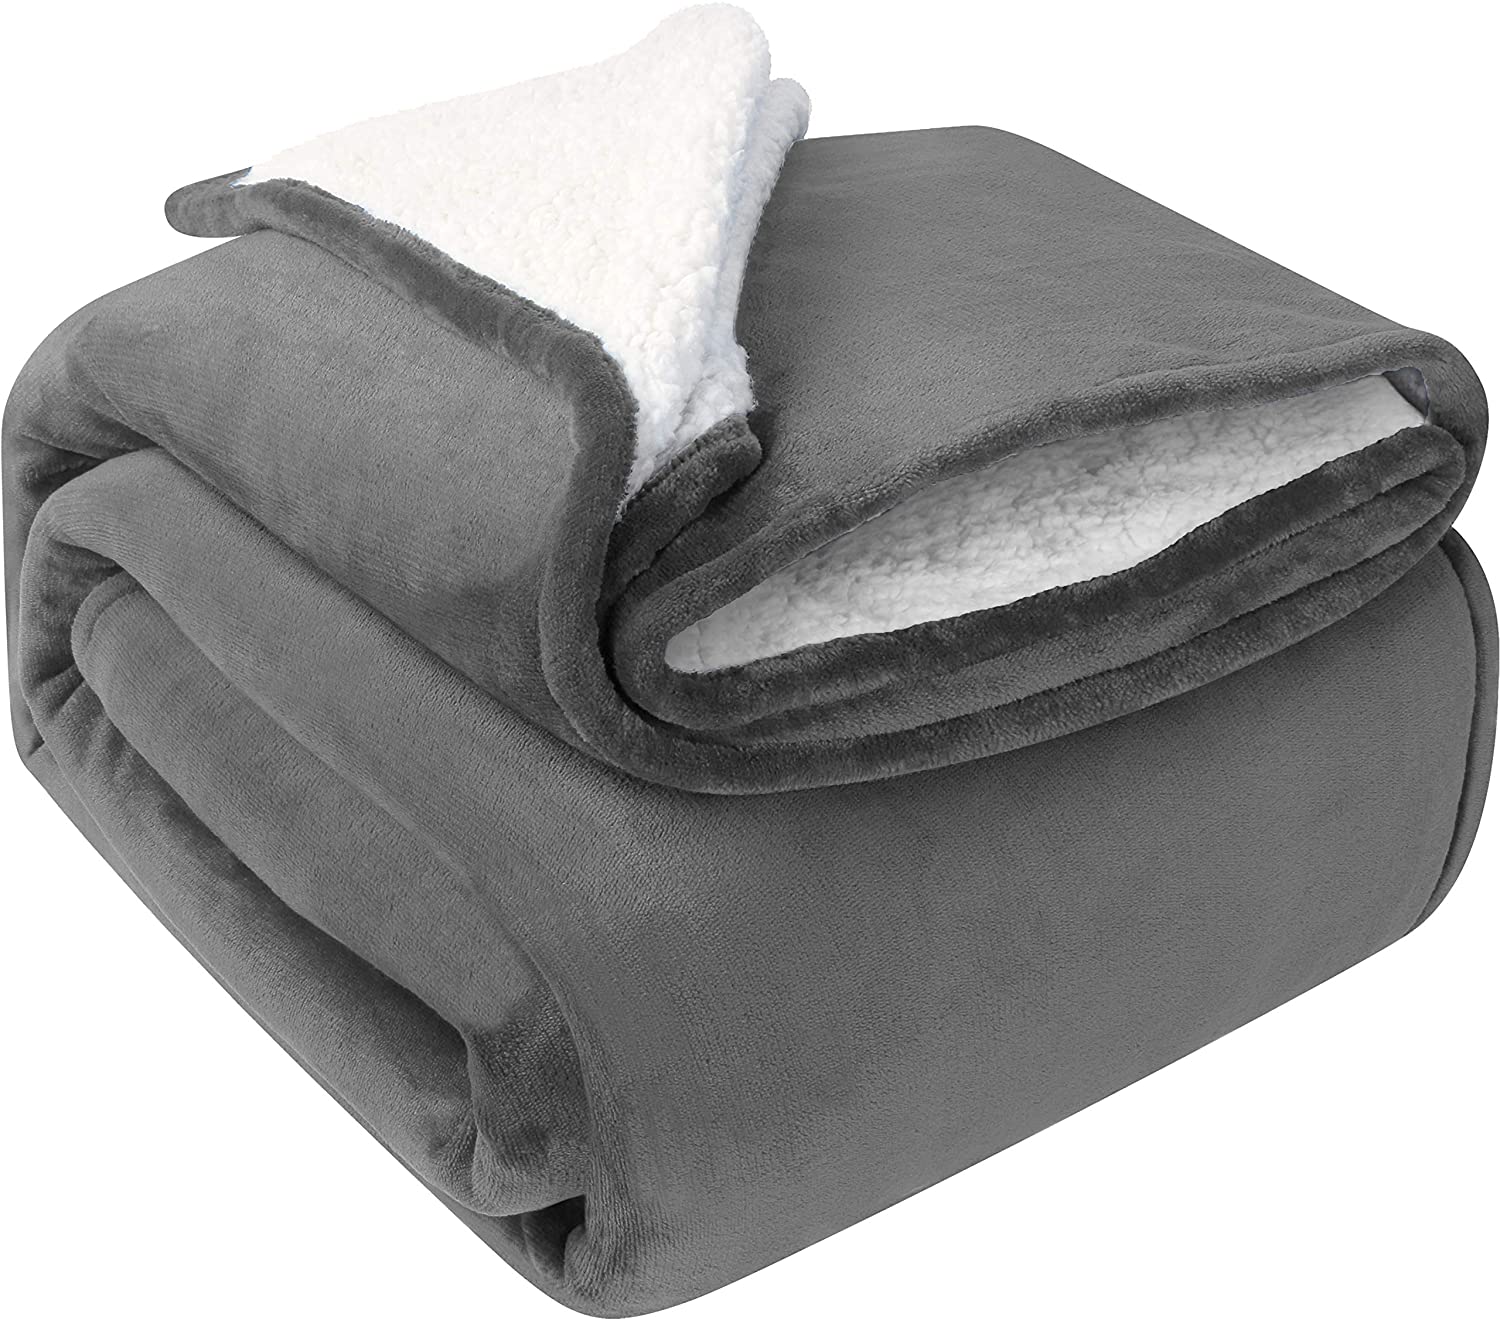 Grey sherpa fleece blanket